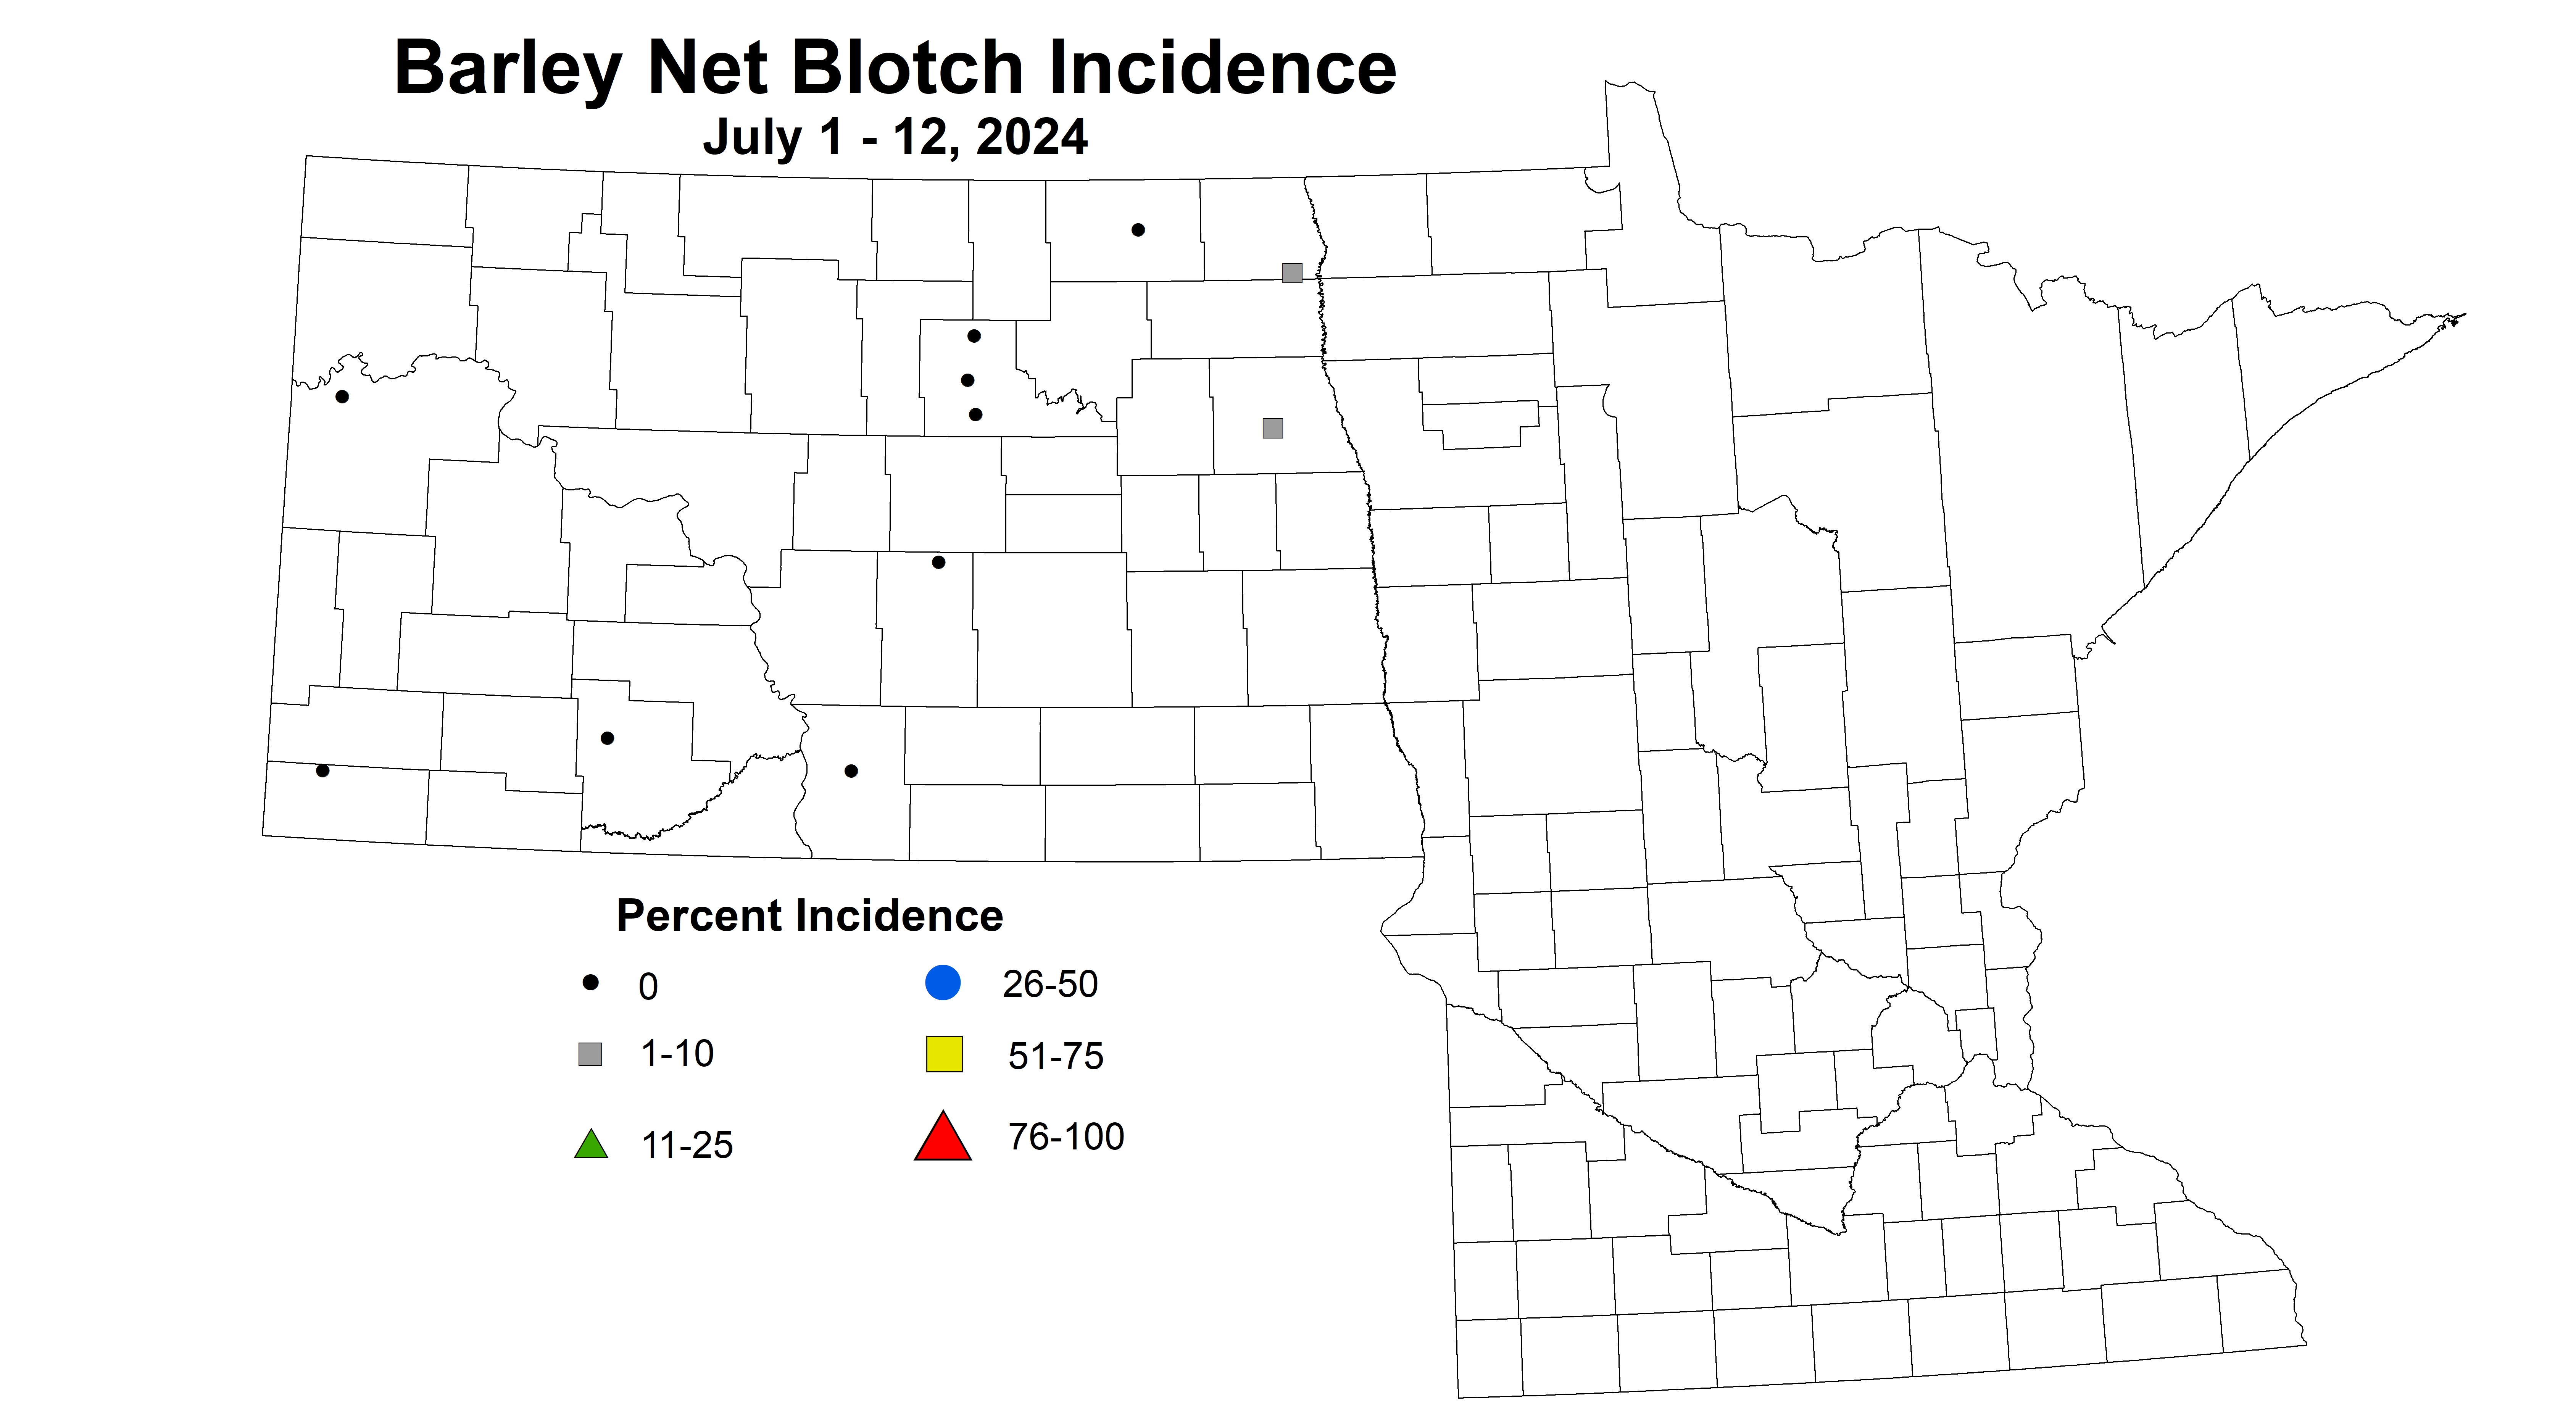 barley net blotch incidence July 1-12 2024